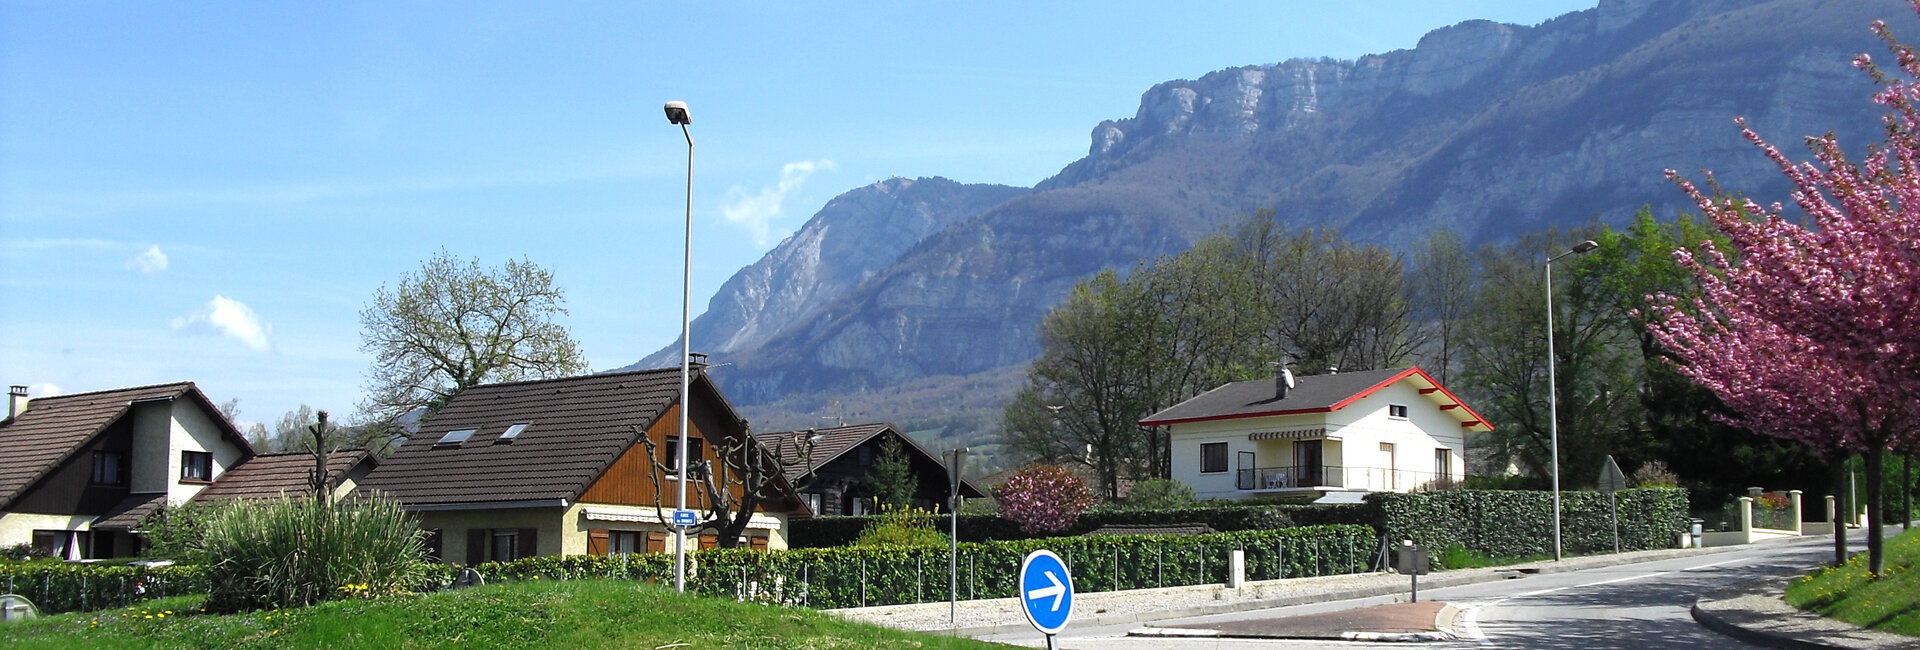 Commune de Méry - Massif du Revard en Savoie